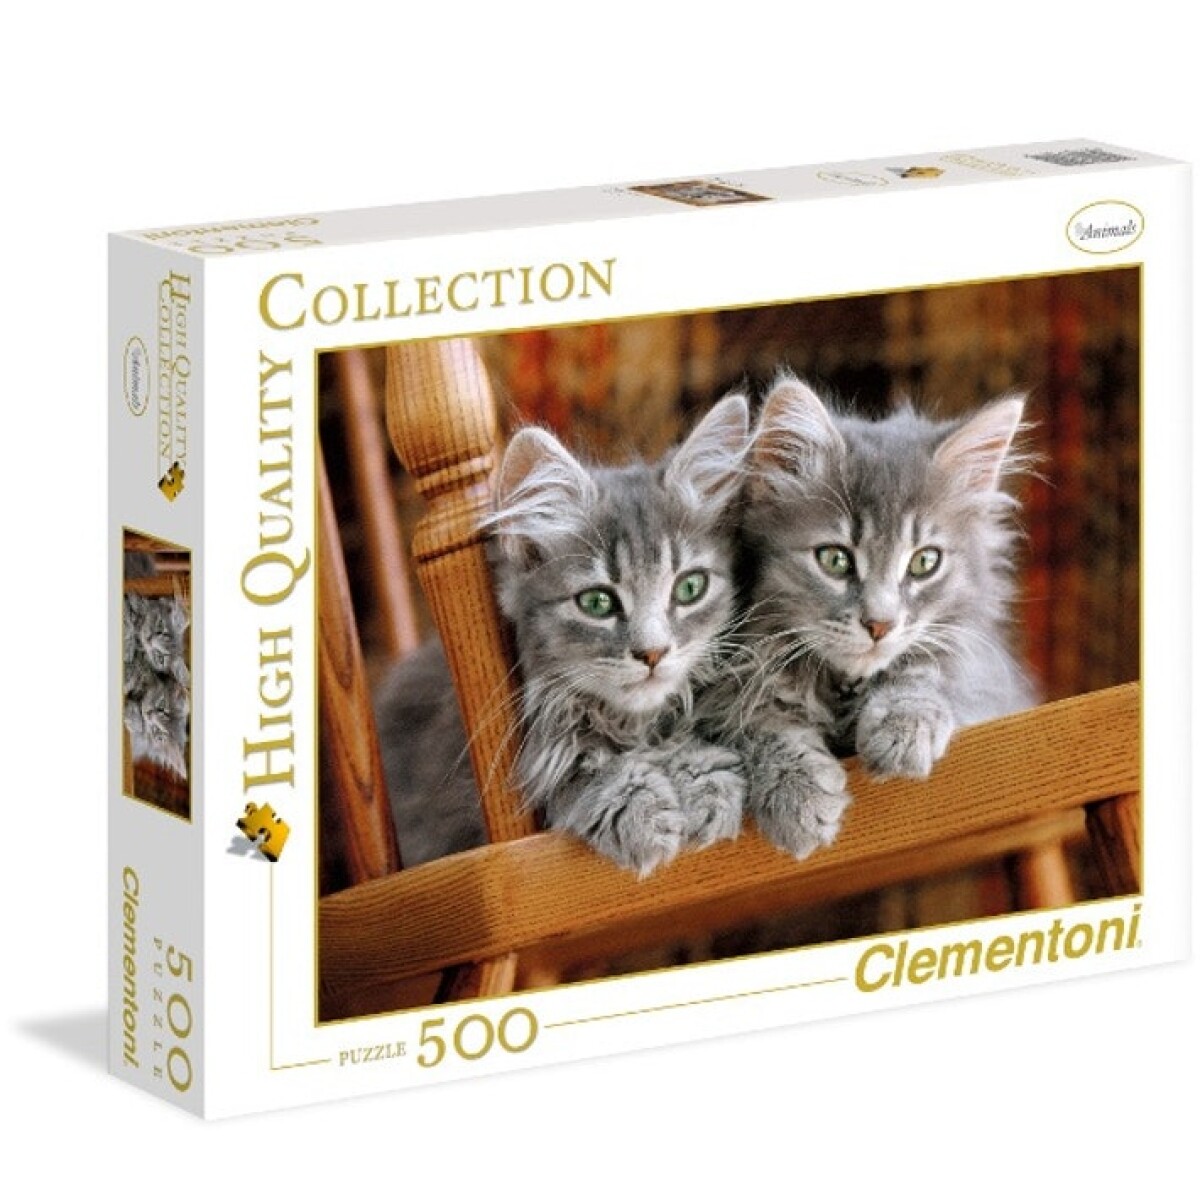 Puzzle Clementoni 500 piezas High Quality Gatos grises - 001 